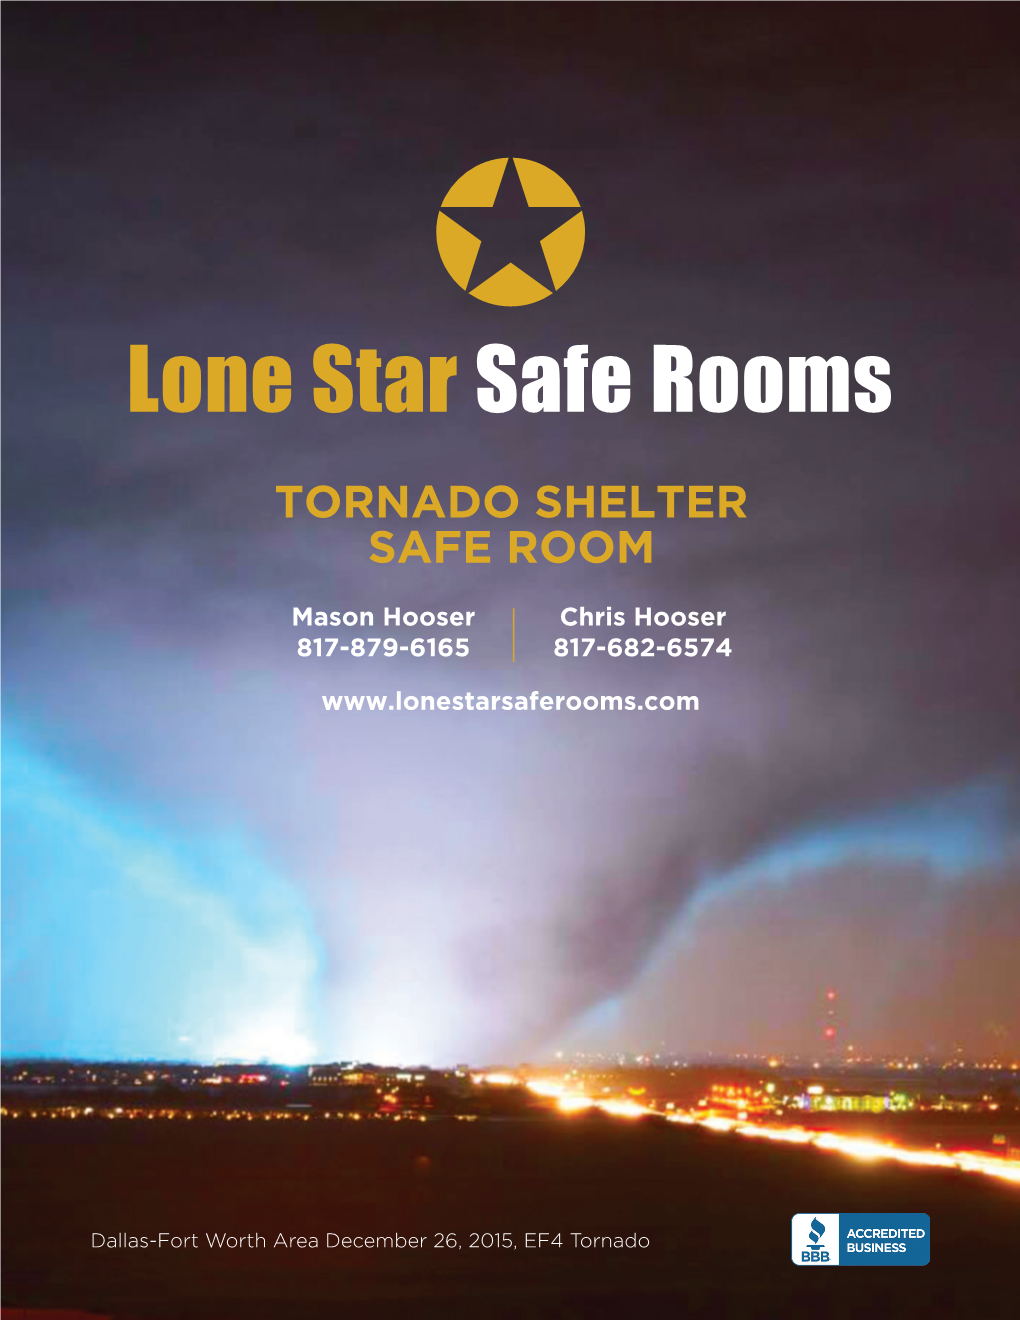 Tornado Shelter Safe Room